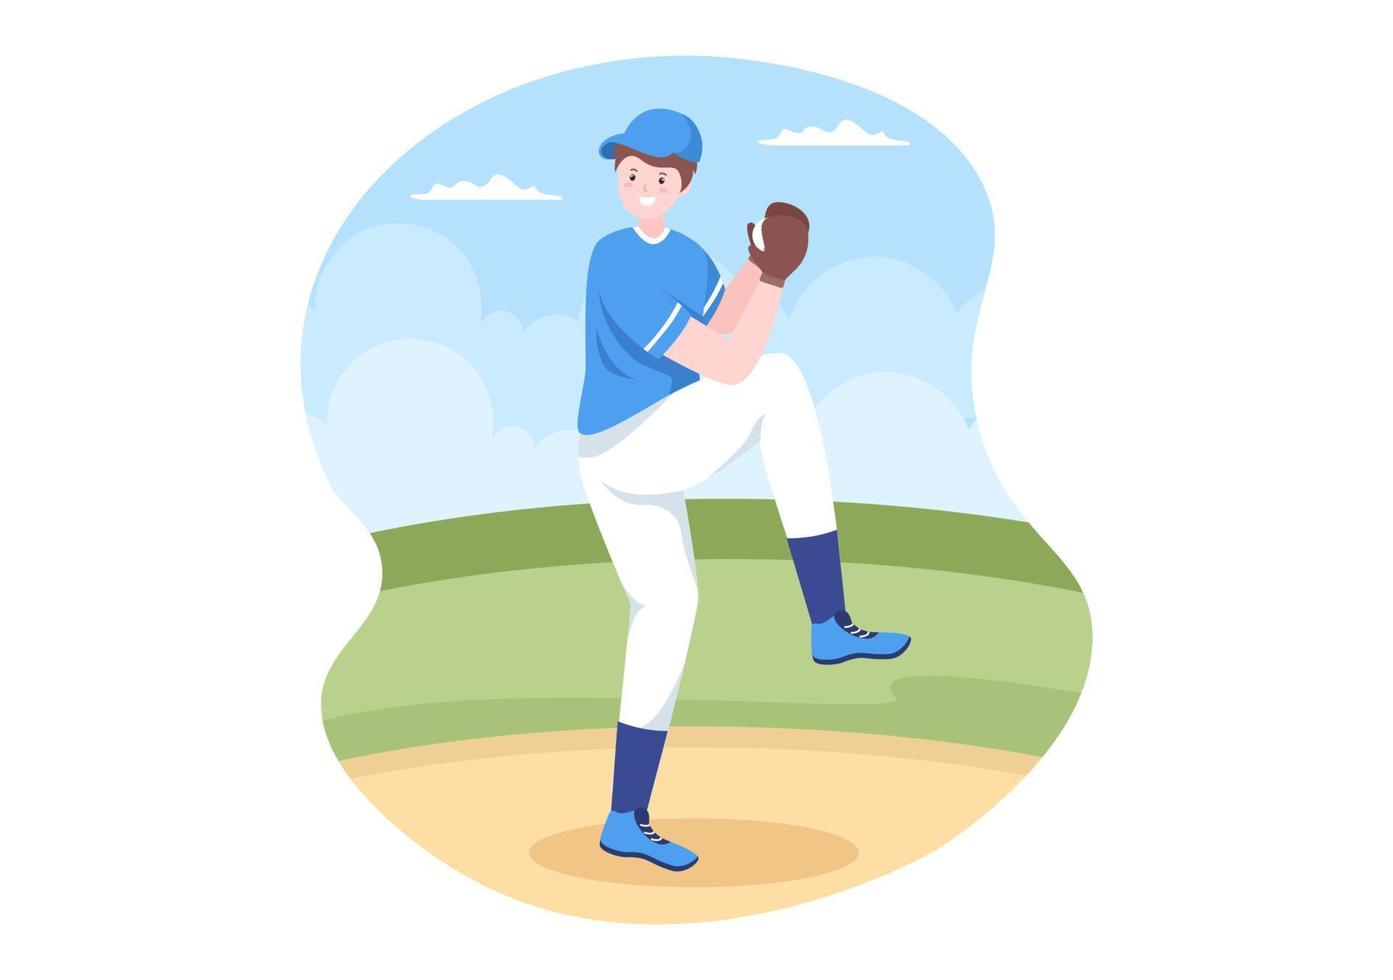 el jugador de béisbol se divierte lanzando, atrapando o golpeando una pelota con bates y guantes usando uniforme en el estadio de la cancha en una ilustración plana de dibujos animados vector